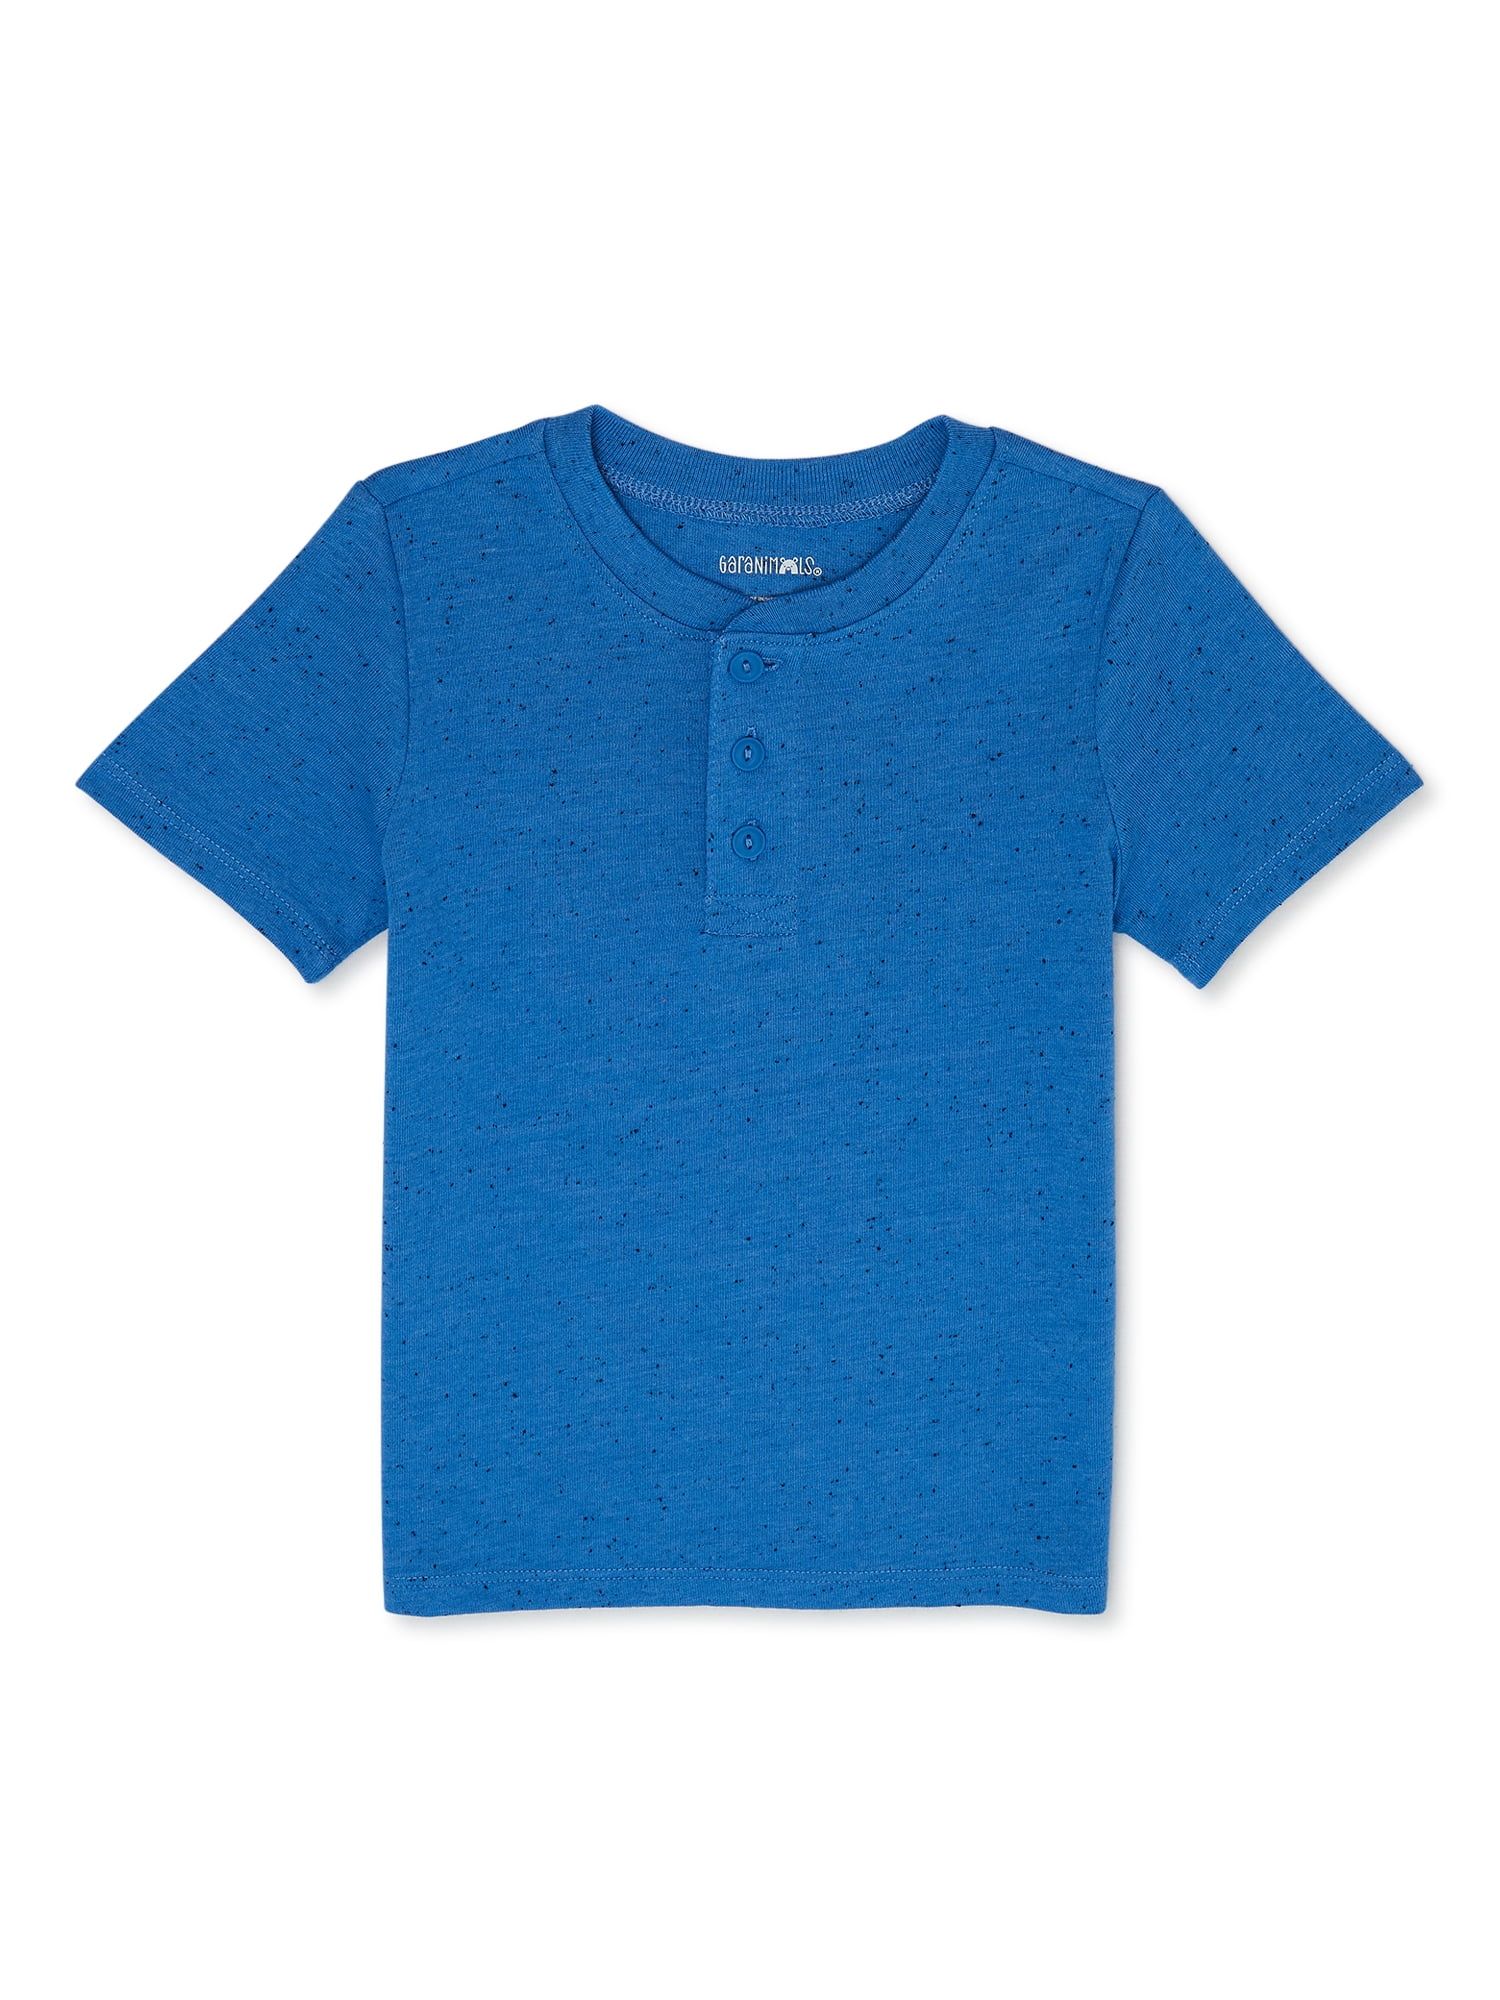 Garanimals Toddler Boy Short Sleeve Henley T-Shirt, Sizes 18M - 5T - Walmart.com | Walmart (US)